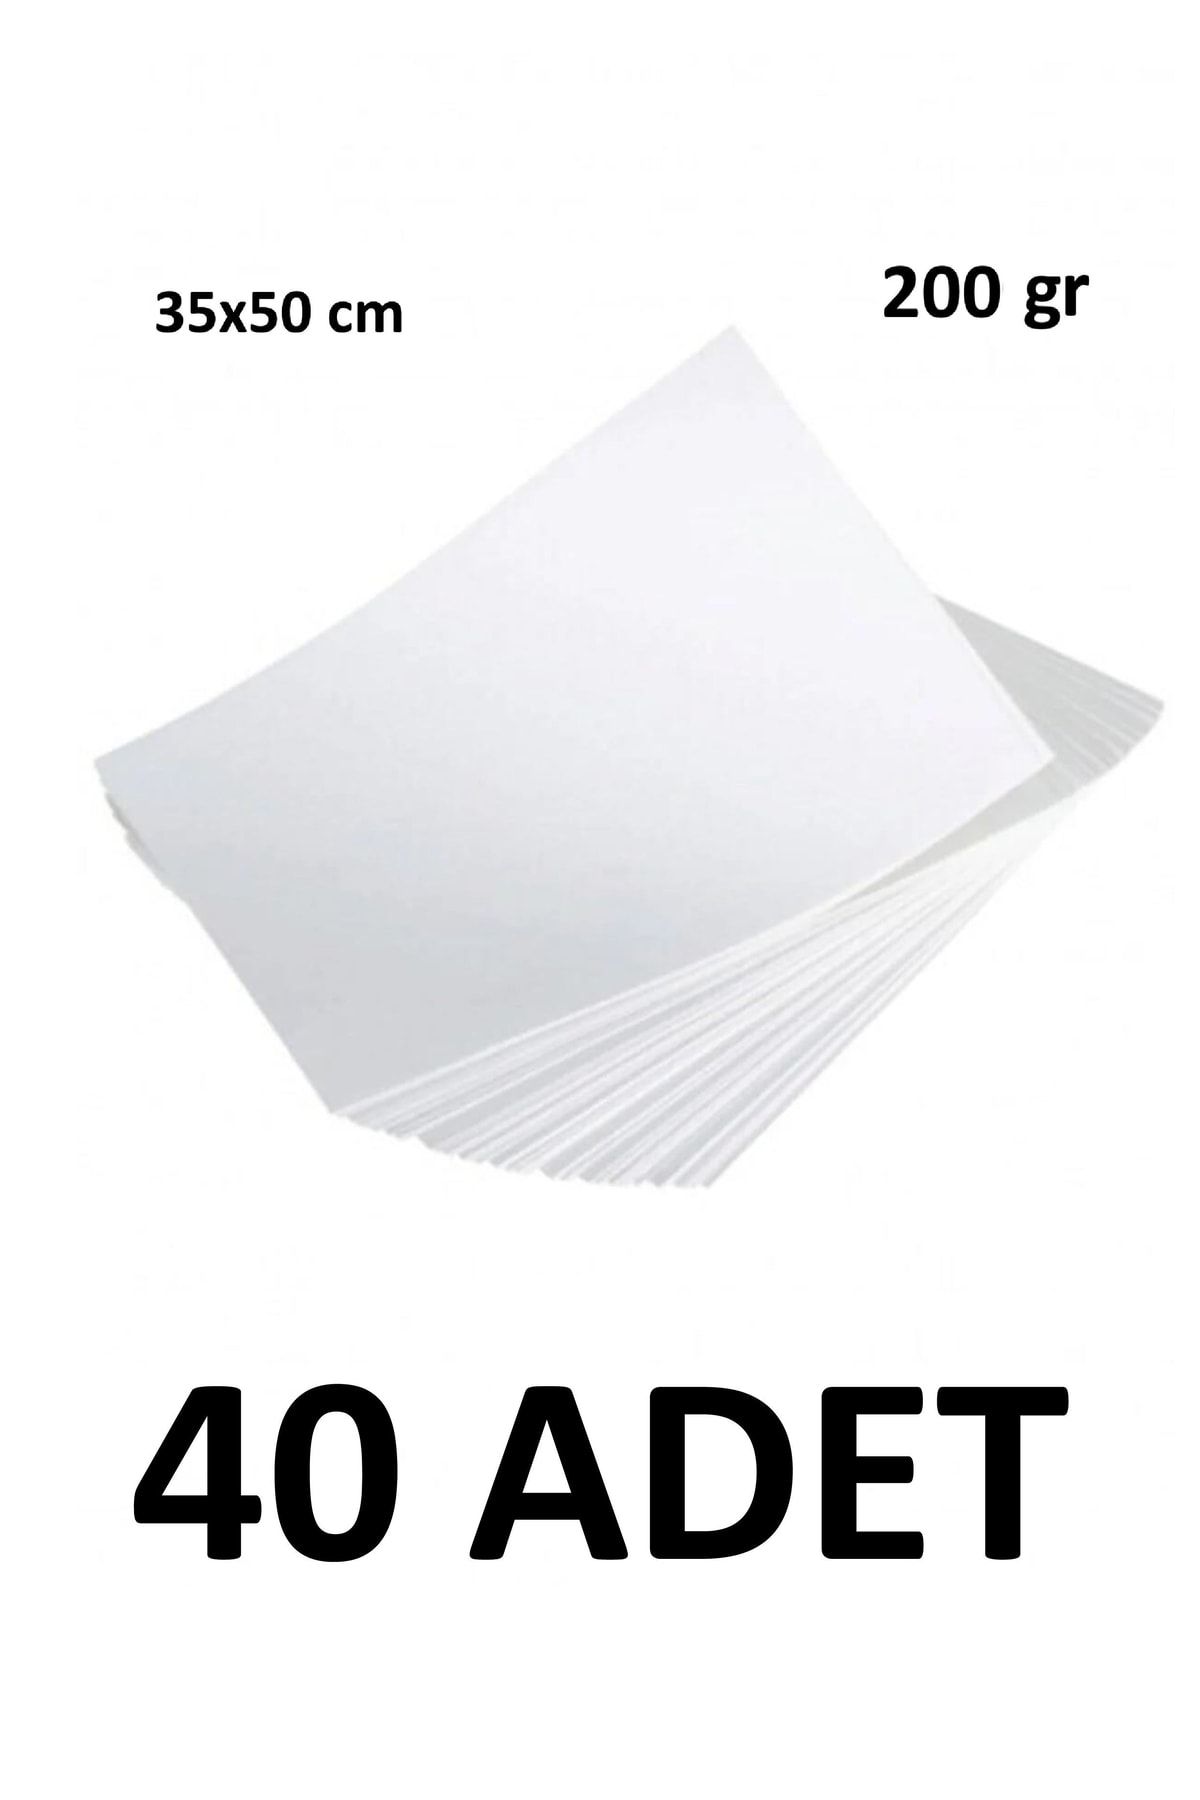 Keskin Color 40 Adet Karatis Art Beyaz Resim Kağıdı 35 X 50 Cm 200 Gr